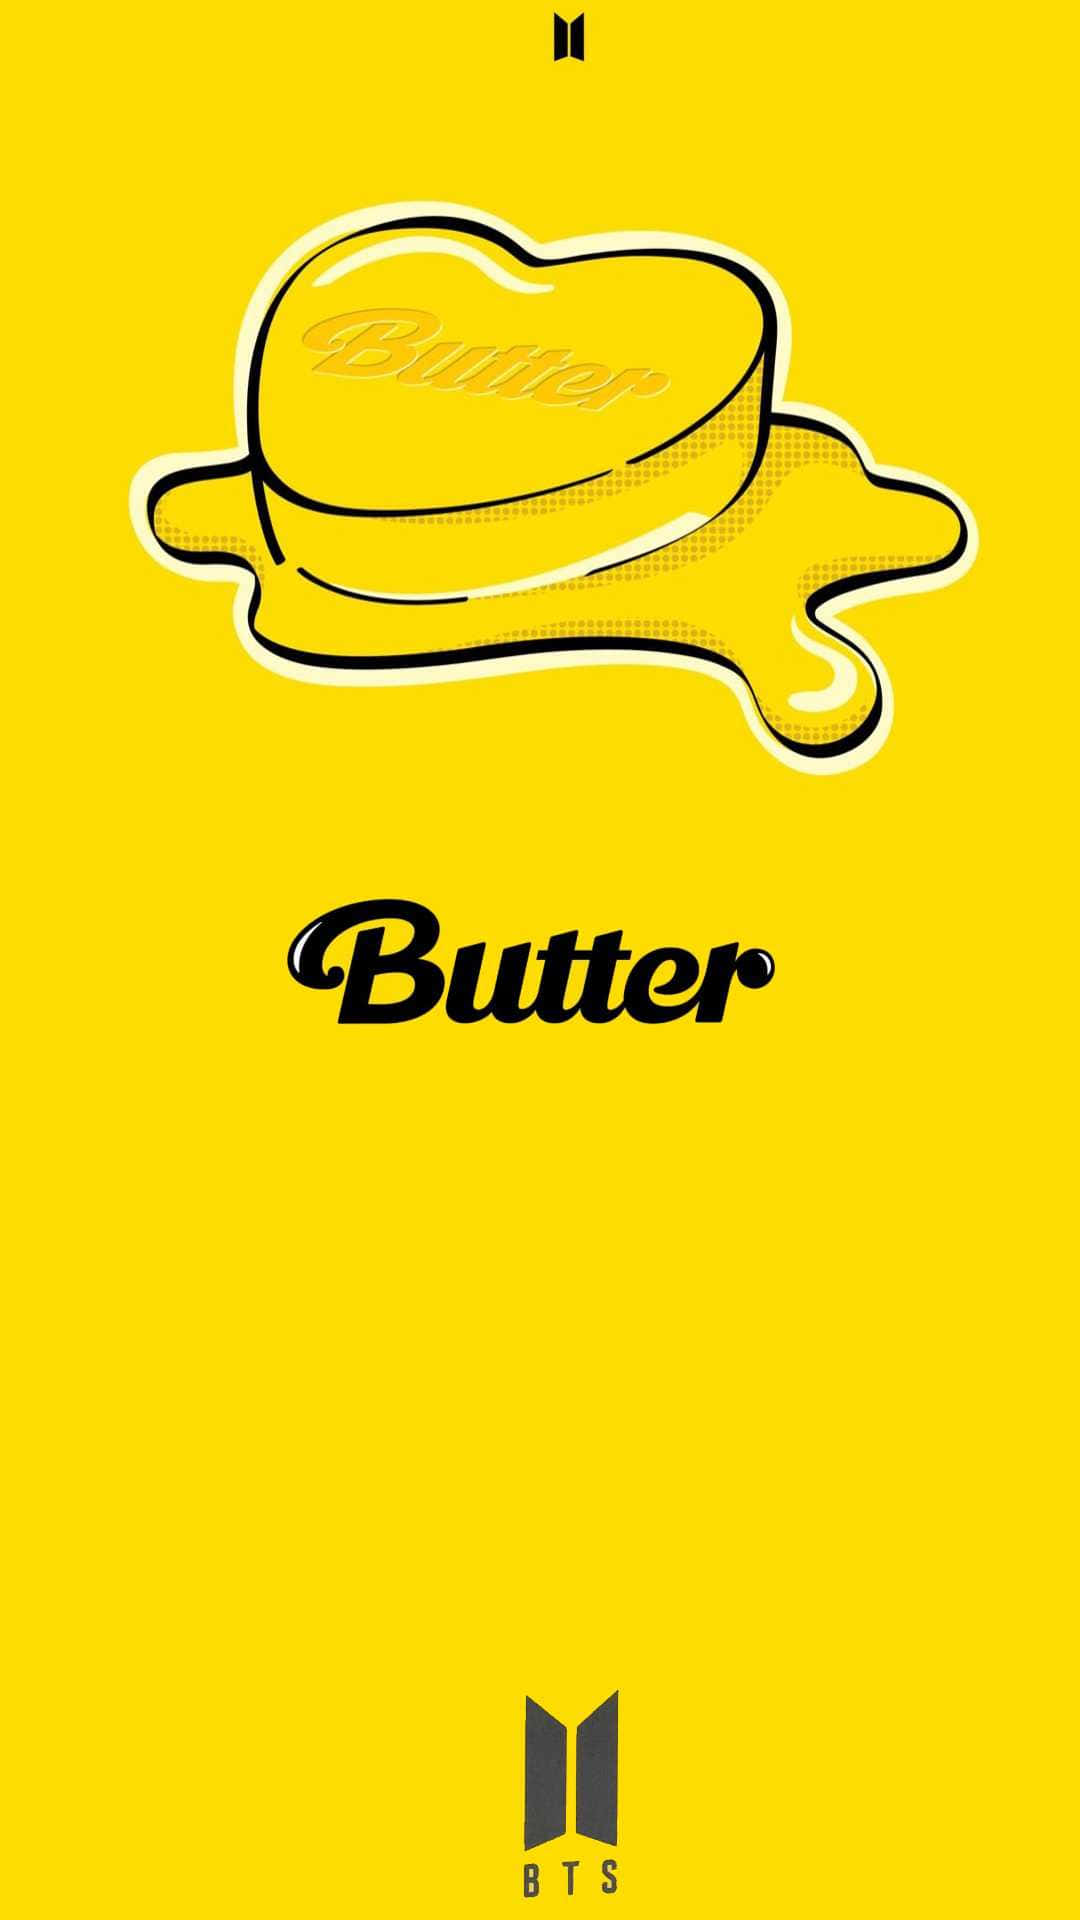 Smakapå Bts Butter Och Upplev Smidig Och Krämig Succé!